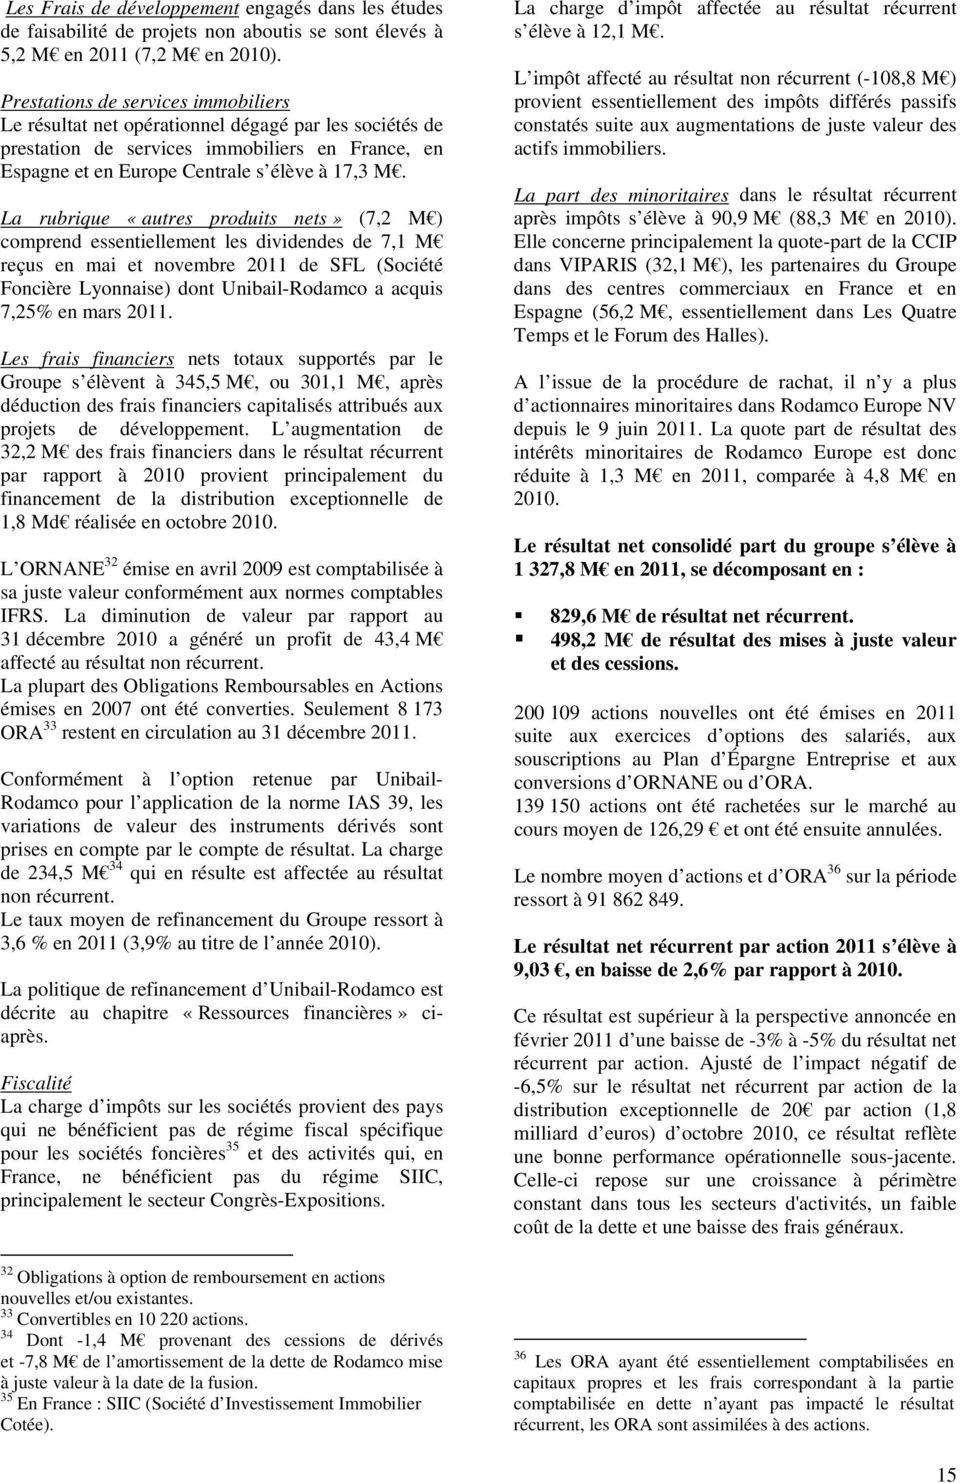 La rubrique «autres produits nets» (7,2 M ) comprend essentiellement les dividendes de 7,1 M reçus en mai et novembre 2011 de SFL (Société Foncière Lyonnaise) dont Unibail-Rodamco a acquis 7,25% en